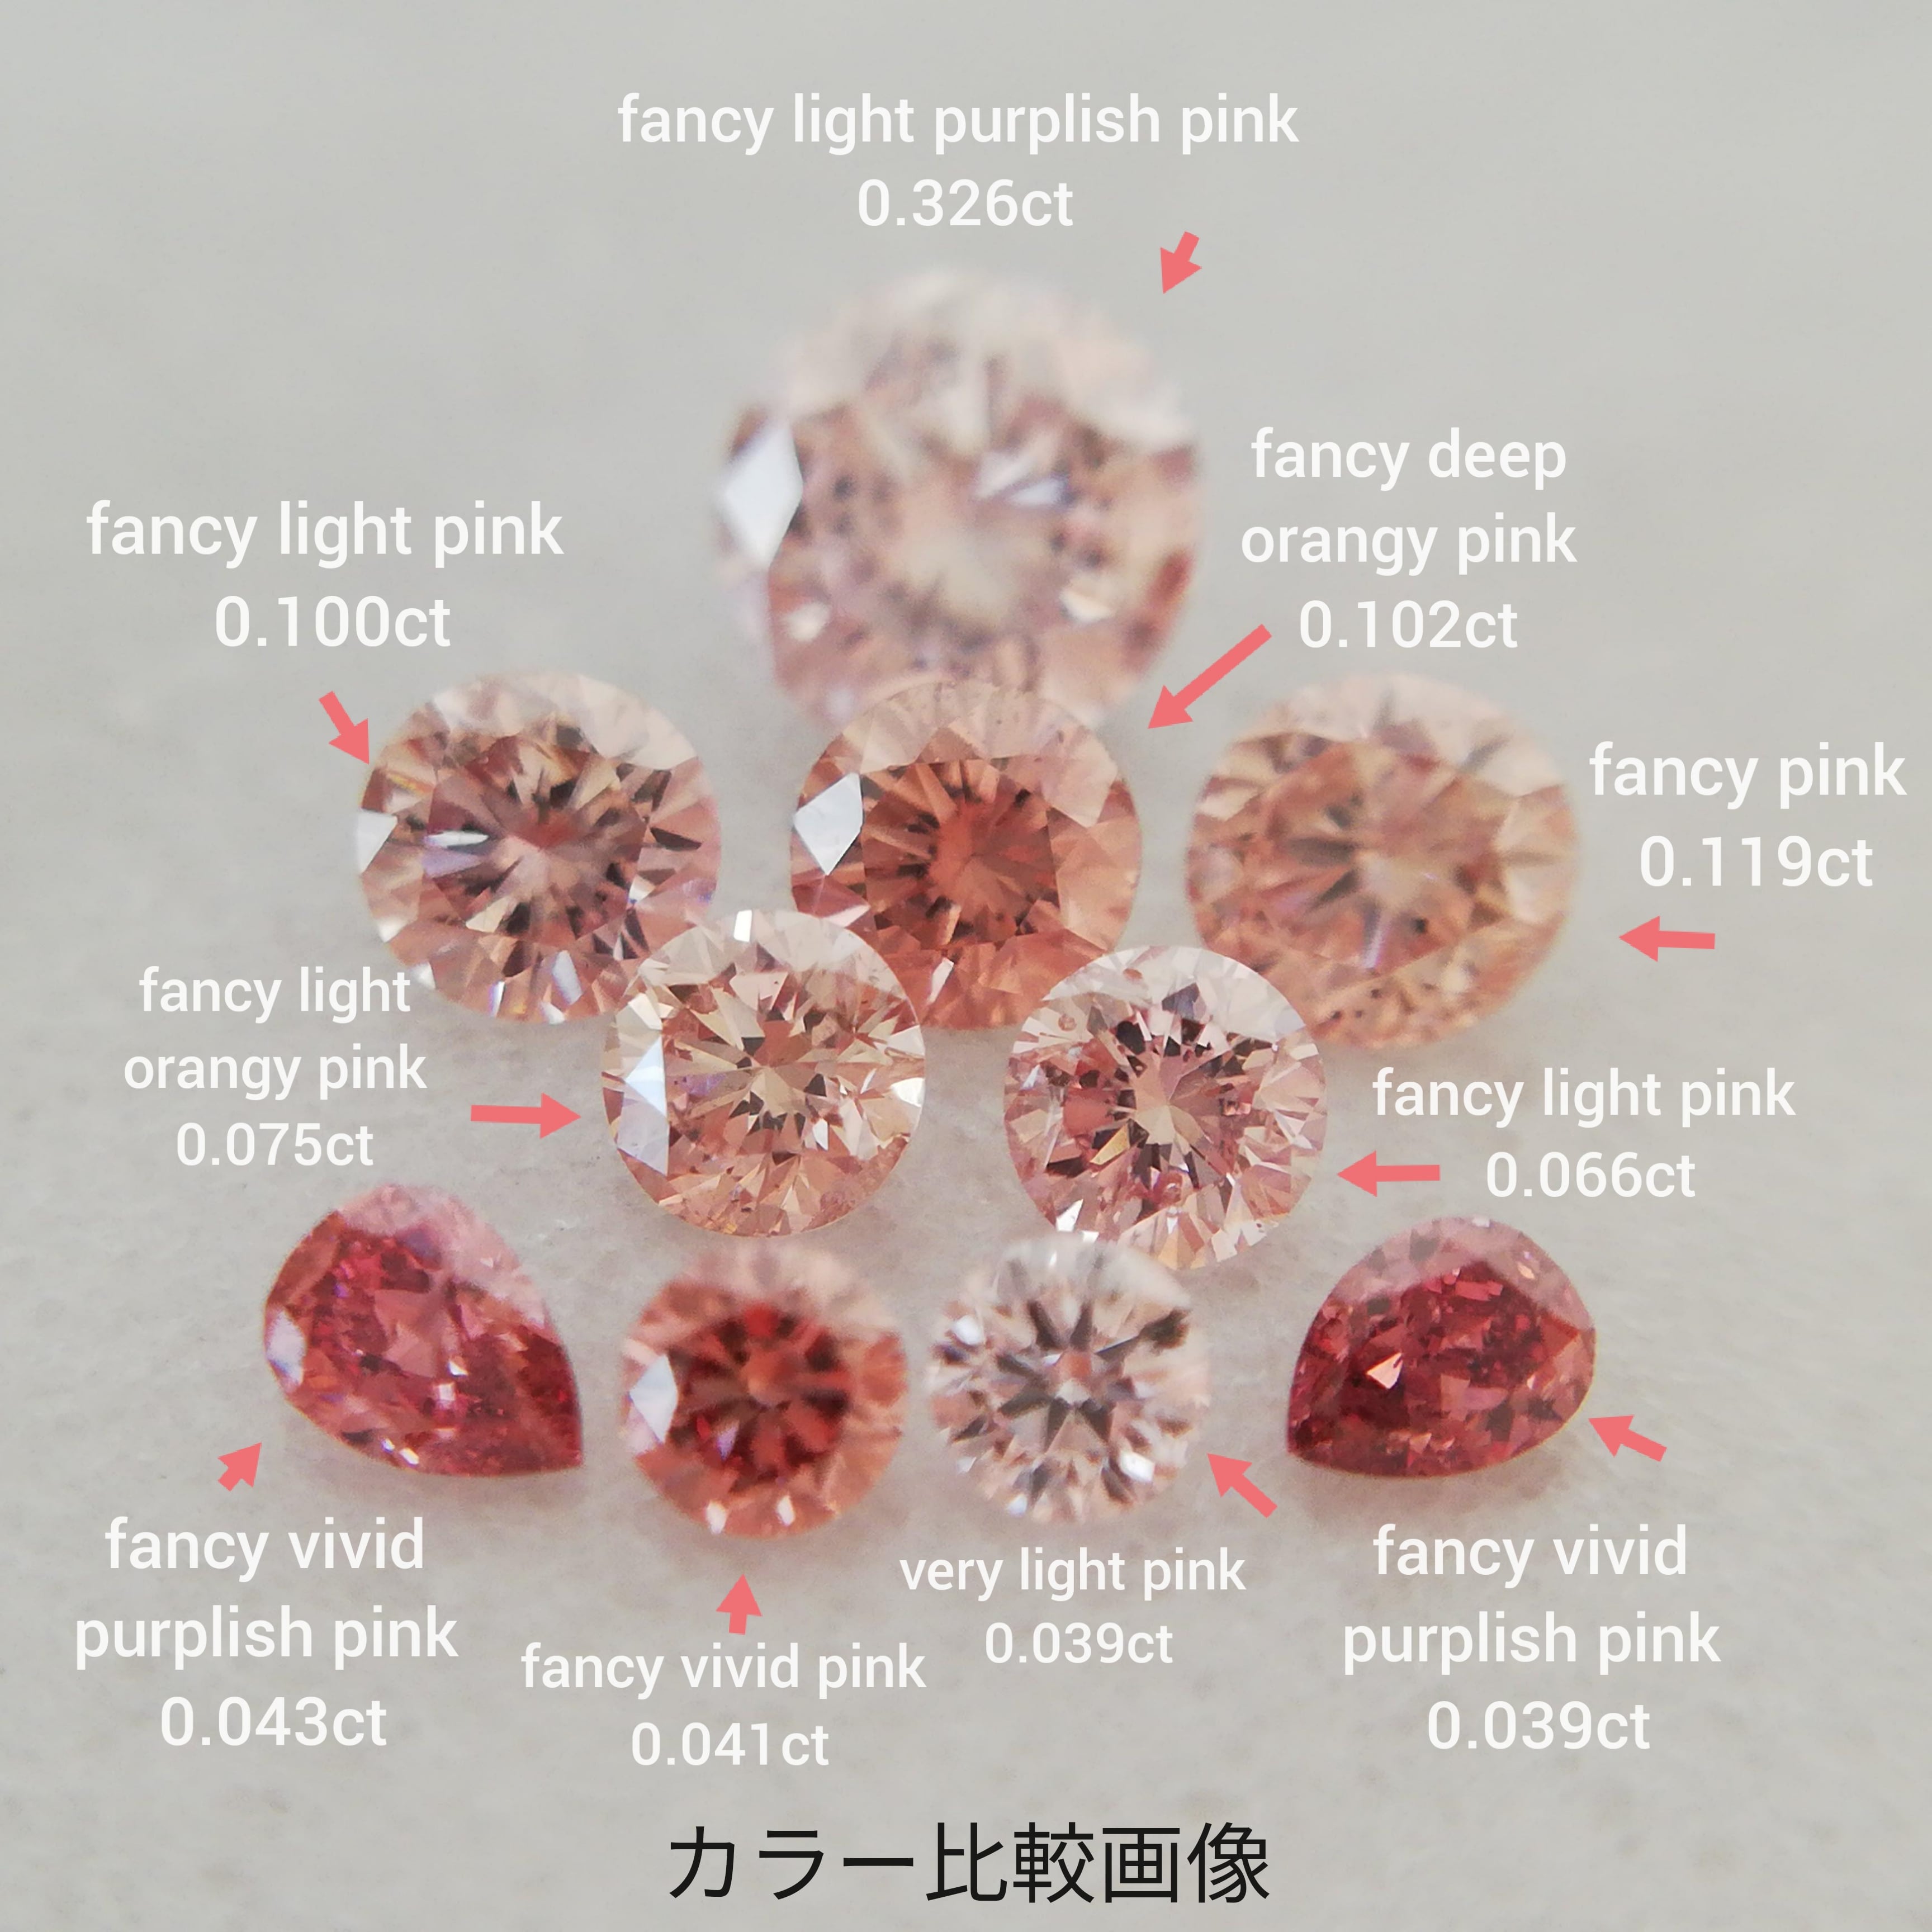 ピンクダイヤモンドルース 0.119ct fancy pink I1(CGL) | fancy color plus